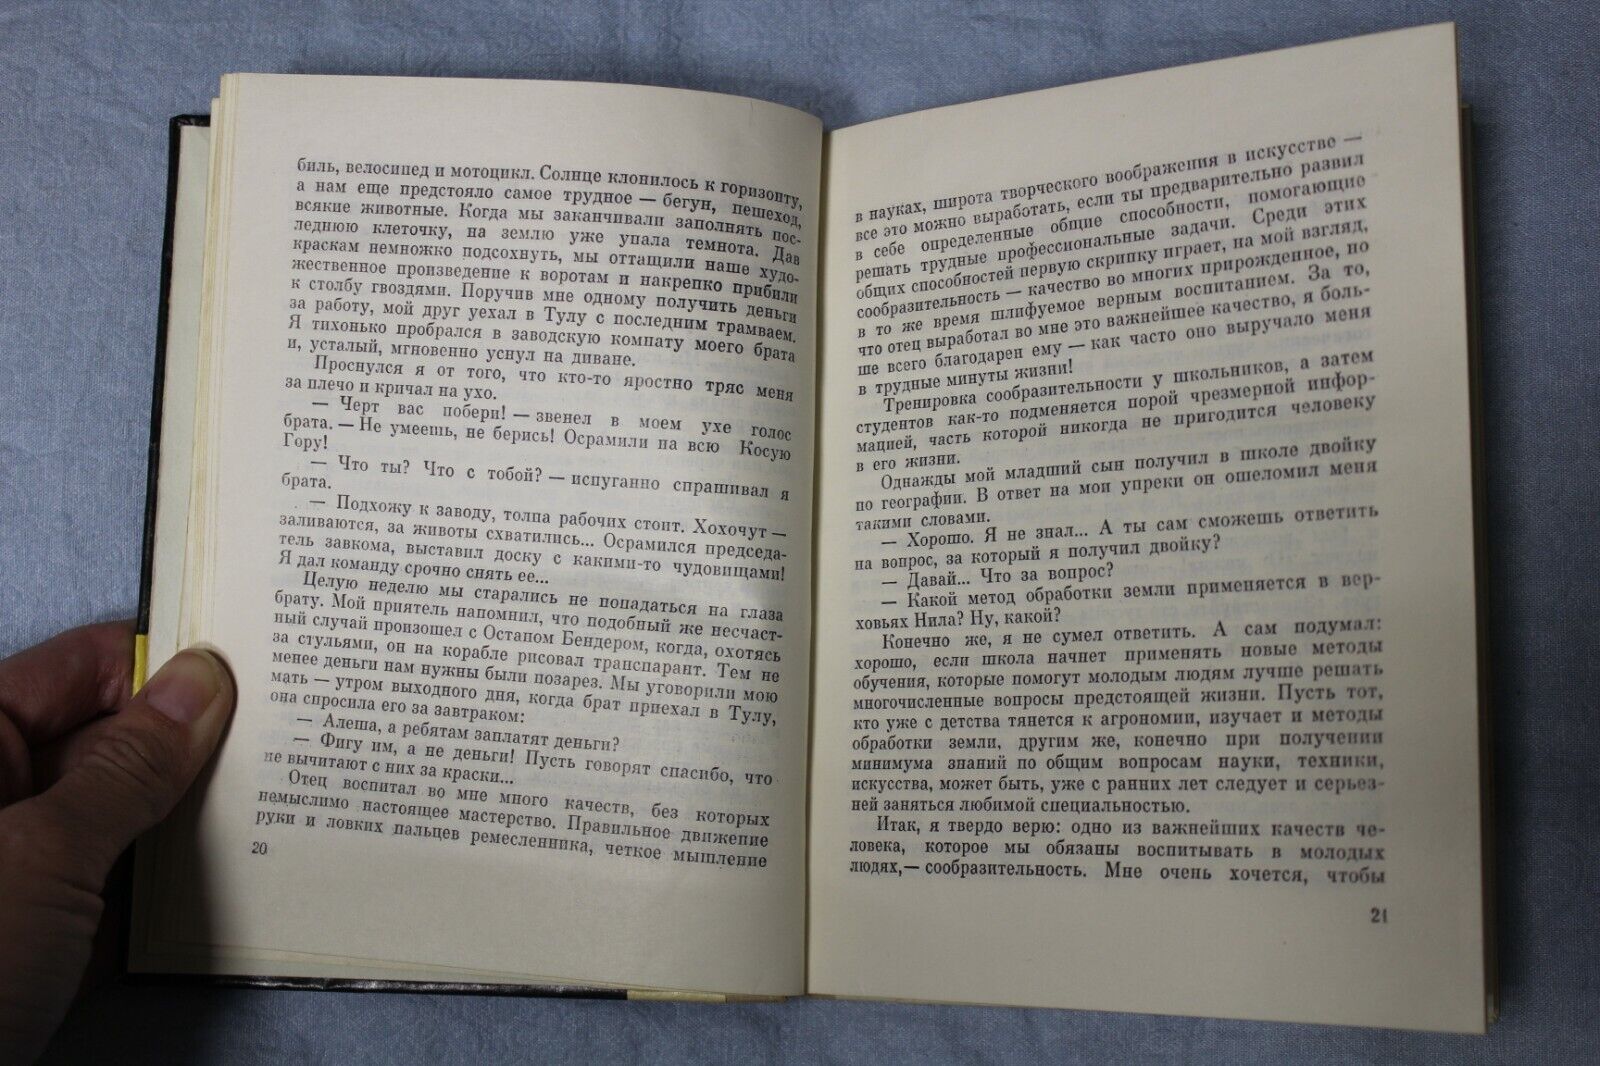 11000.Chess book Baturinsky-Karpov library: signed Kotov, Mastery, 1975